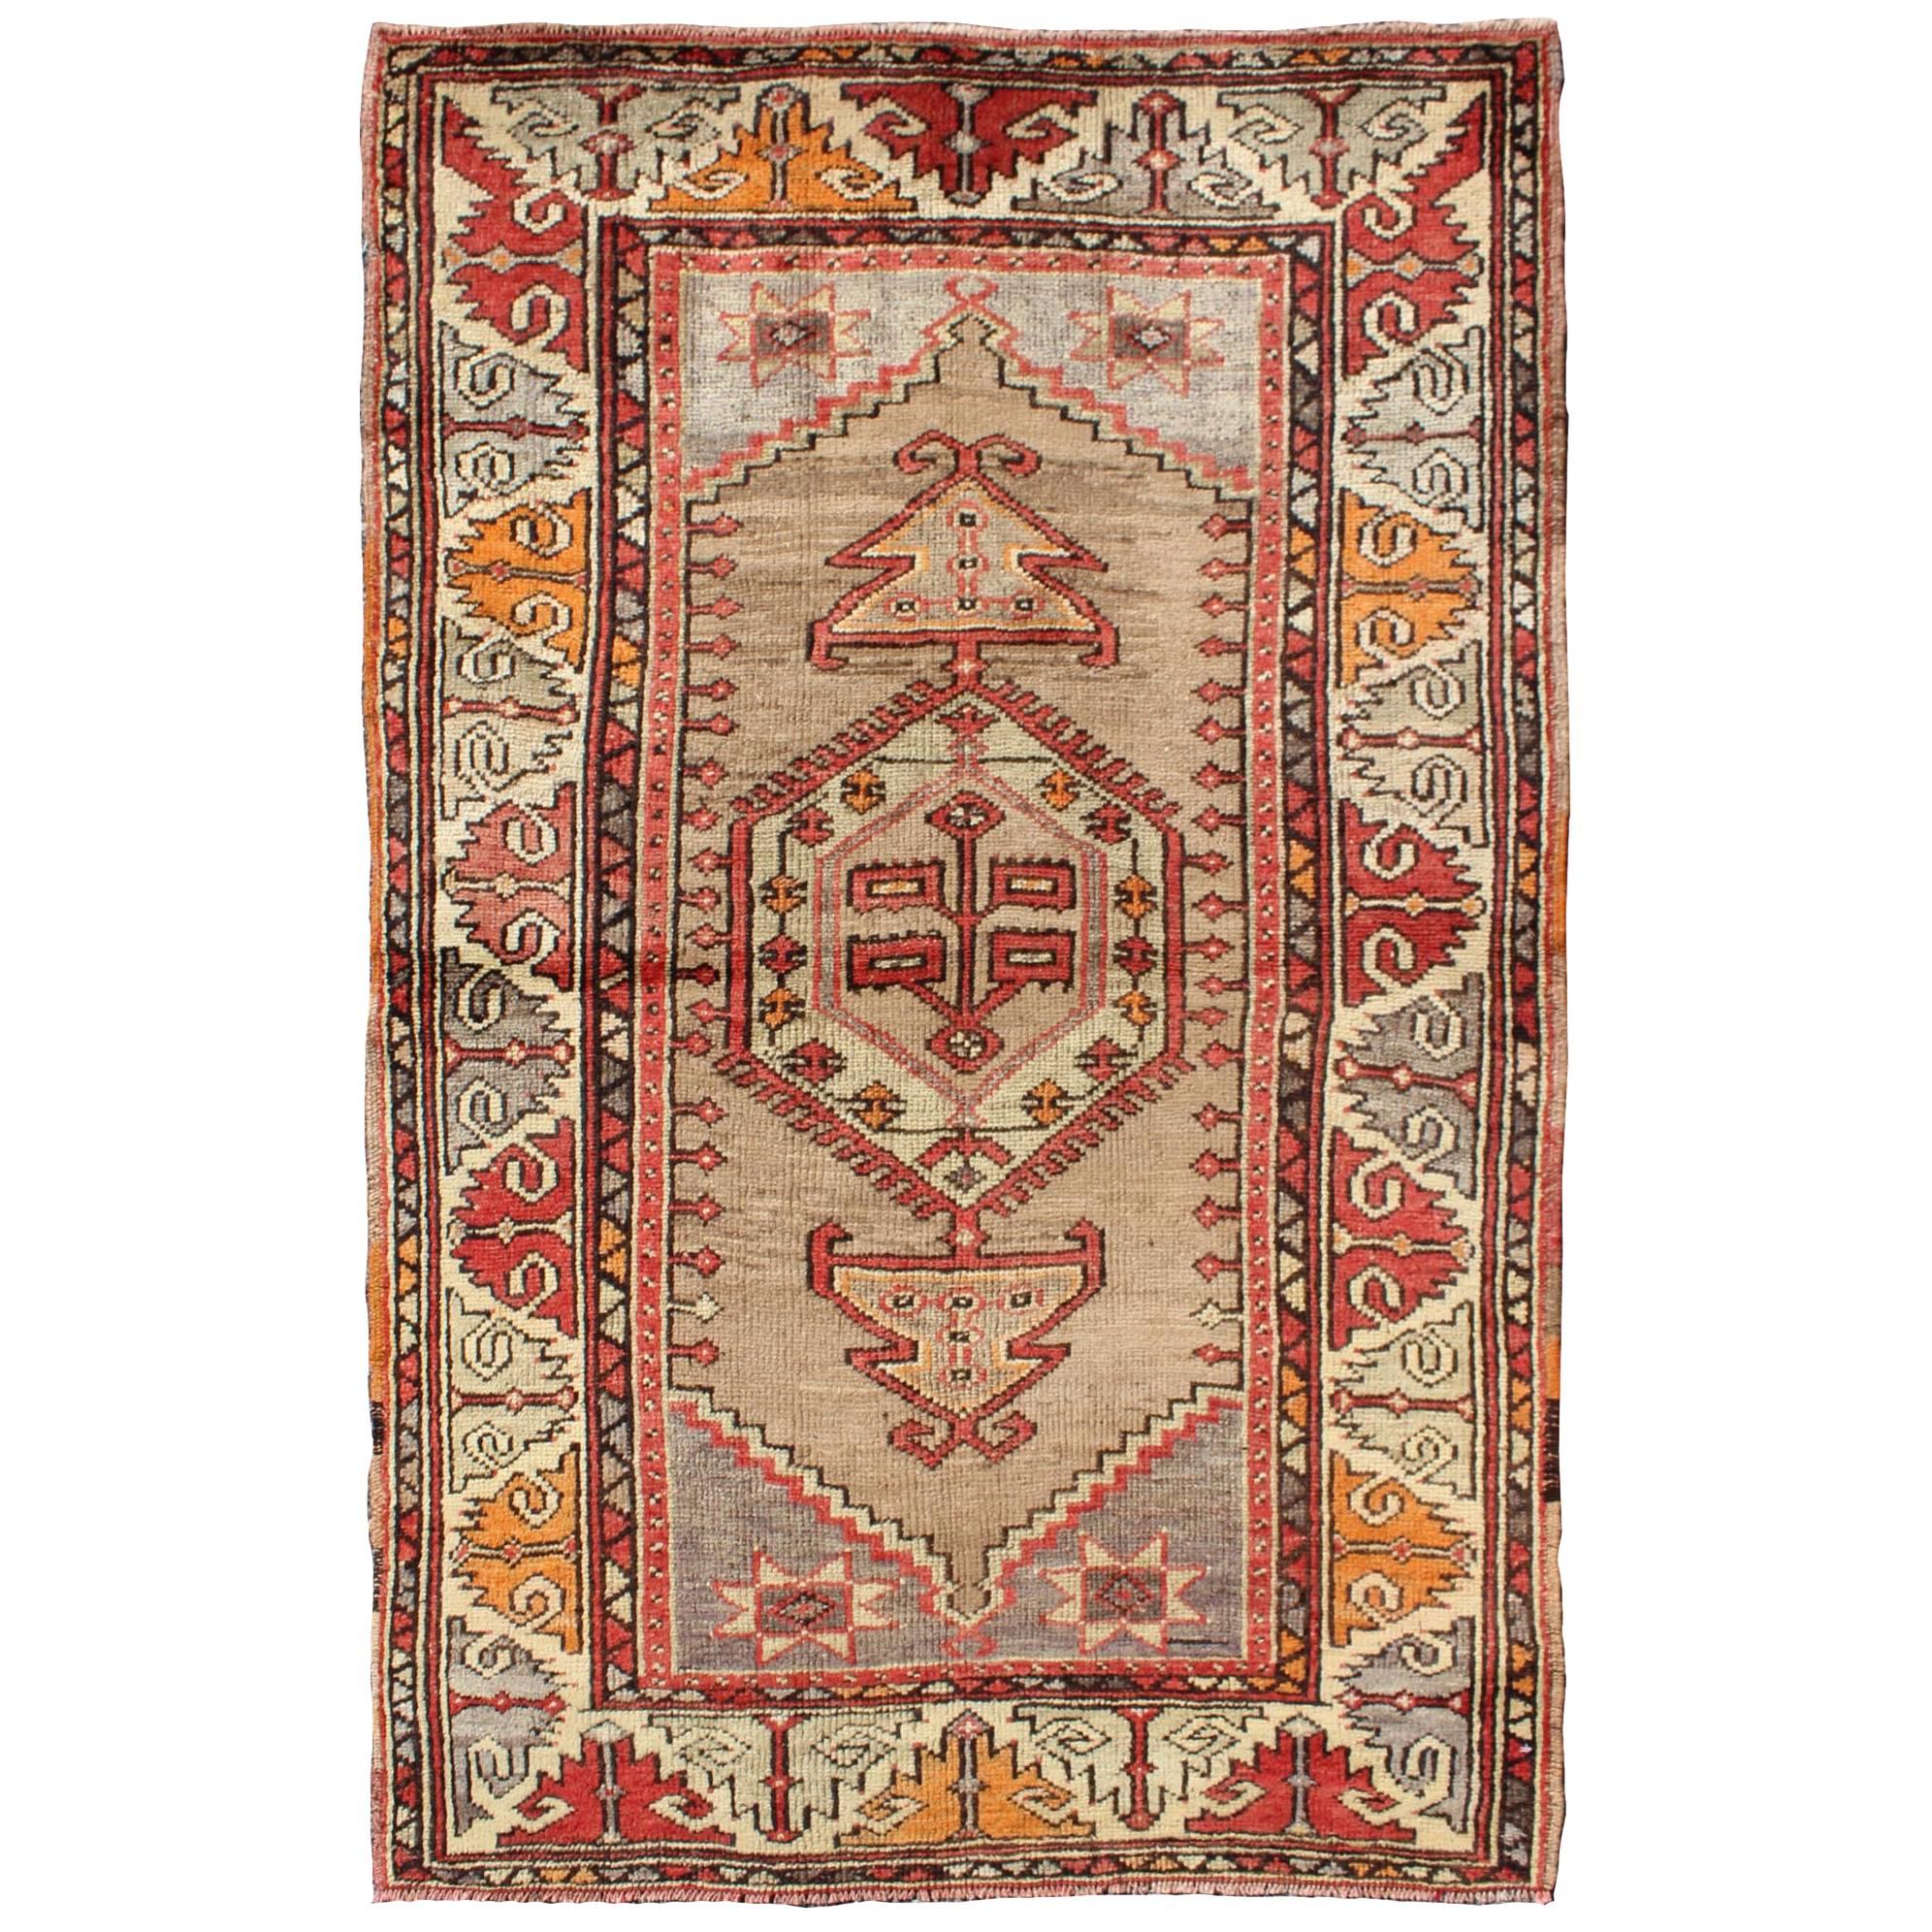 Buntfarbener türkischer Oushak-Teppich im Vintage-Stil mit geometrischem Design